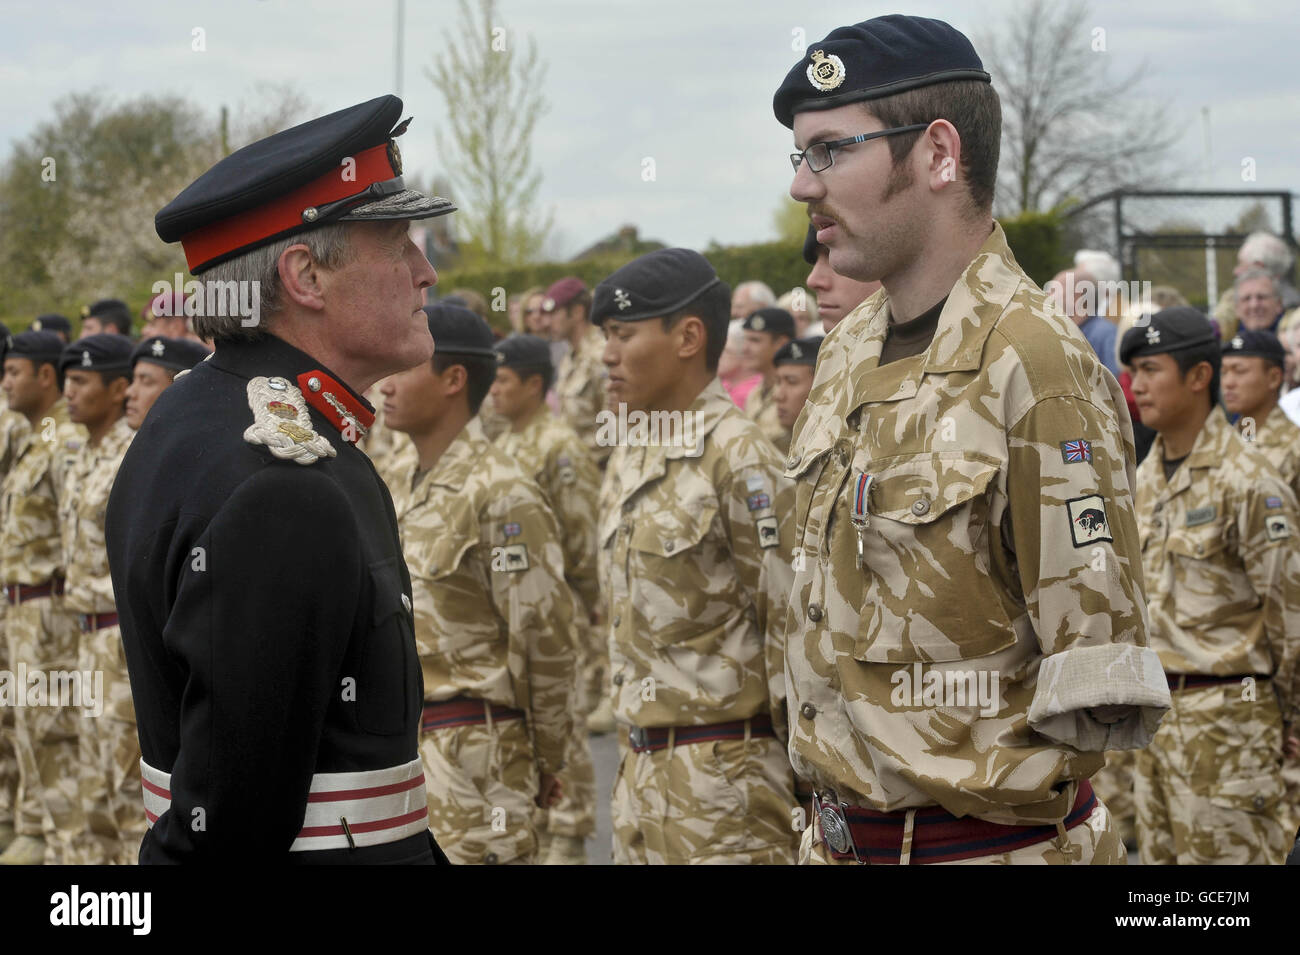 Lord Lieutenant Tim Stevenson überreicht Royal Engineer Sapper Ryan Seary, der seinen linken Arm und sein linkes Bein verloren hat, die Afghanistan Campaign Medal vor dem Didcot Civic Center nach einem marsch durch die Straßen von Didcot, Oxfordshire, wo Tausende von Menschen die Soldaten unterstützten. Stockfoto